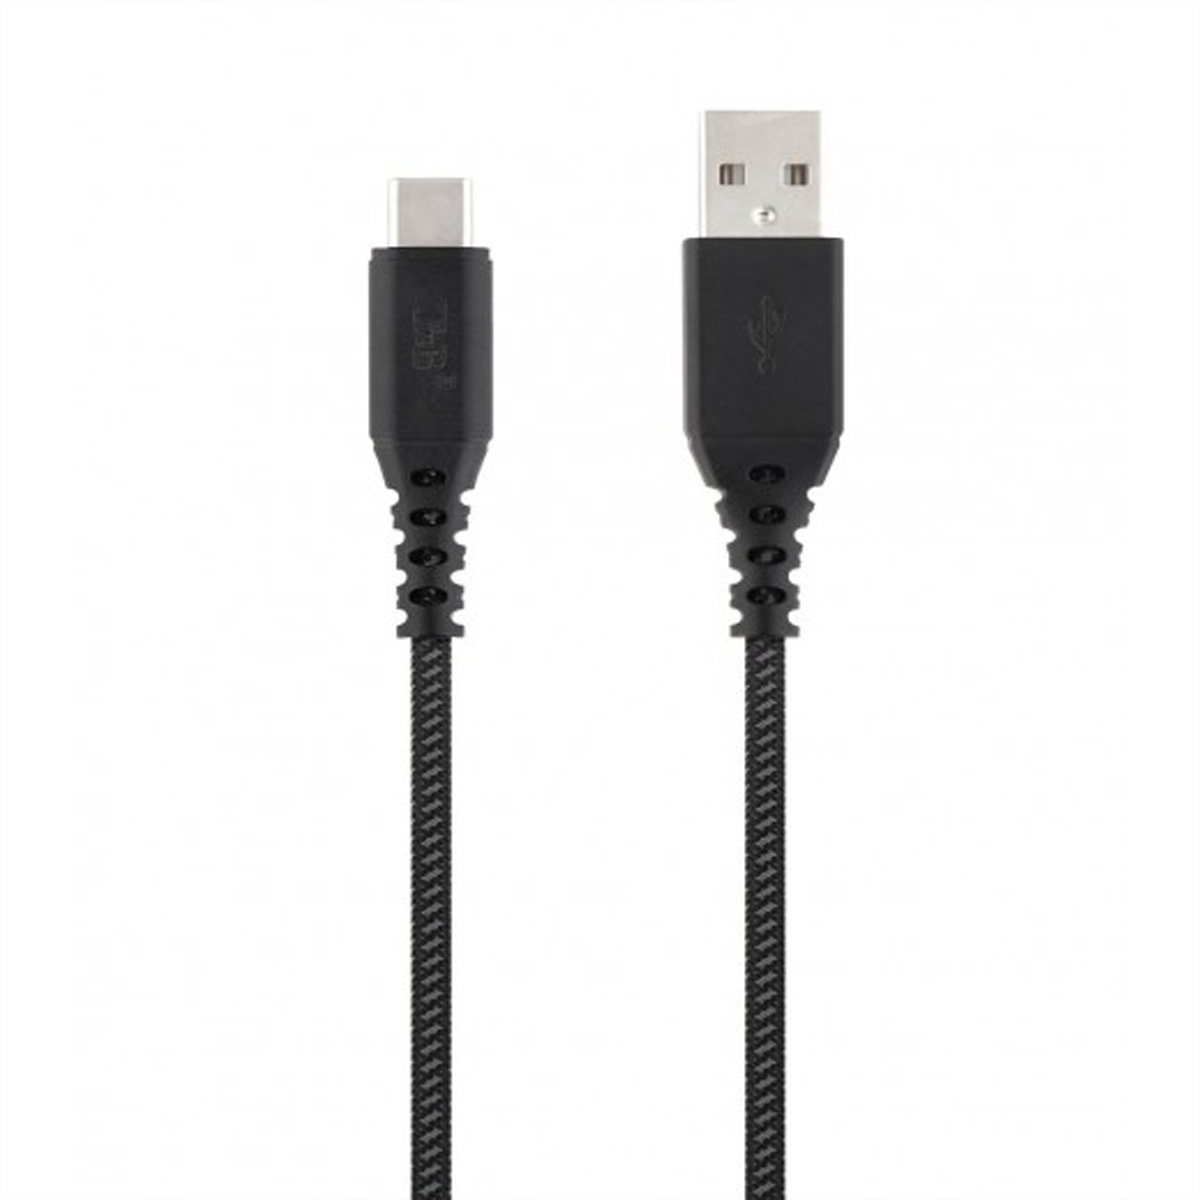 T''NB XW3M USB/USB C Kabel, schwarz/grau, 1,5 Meter